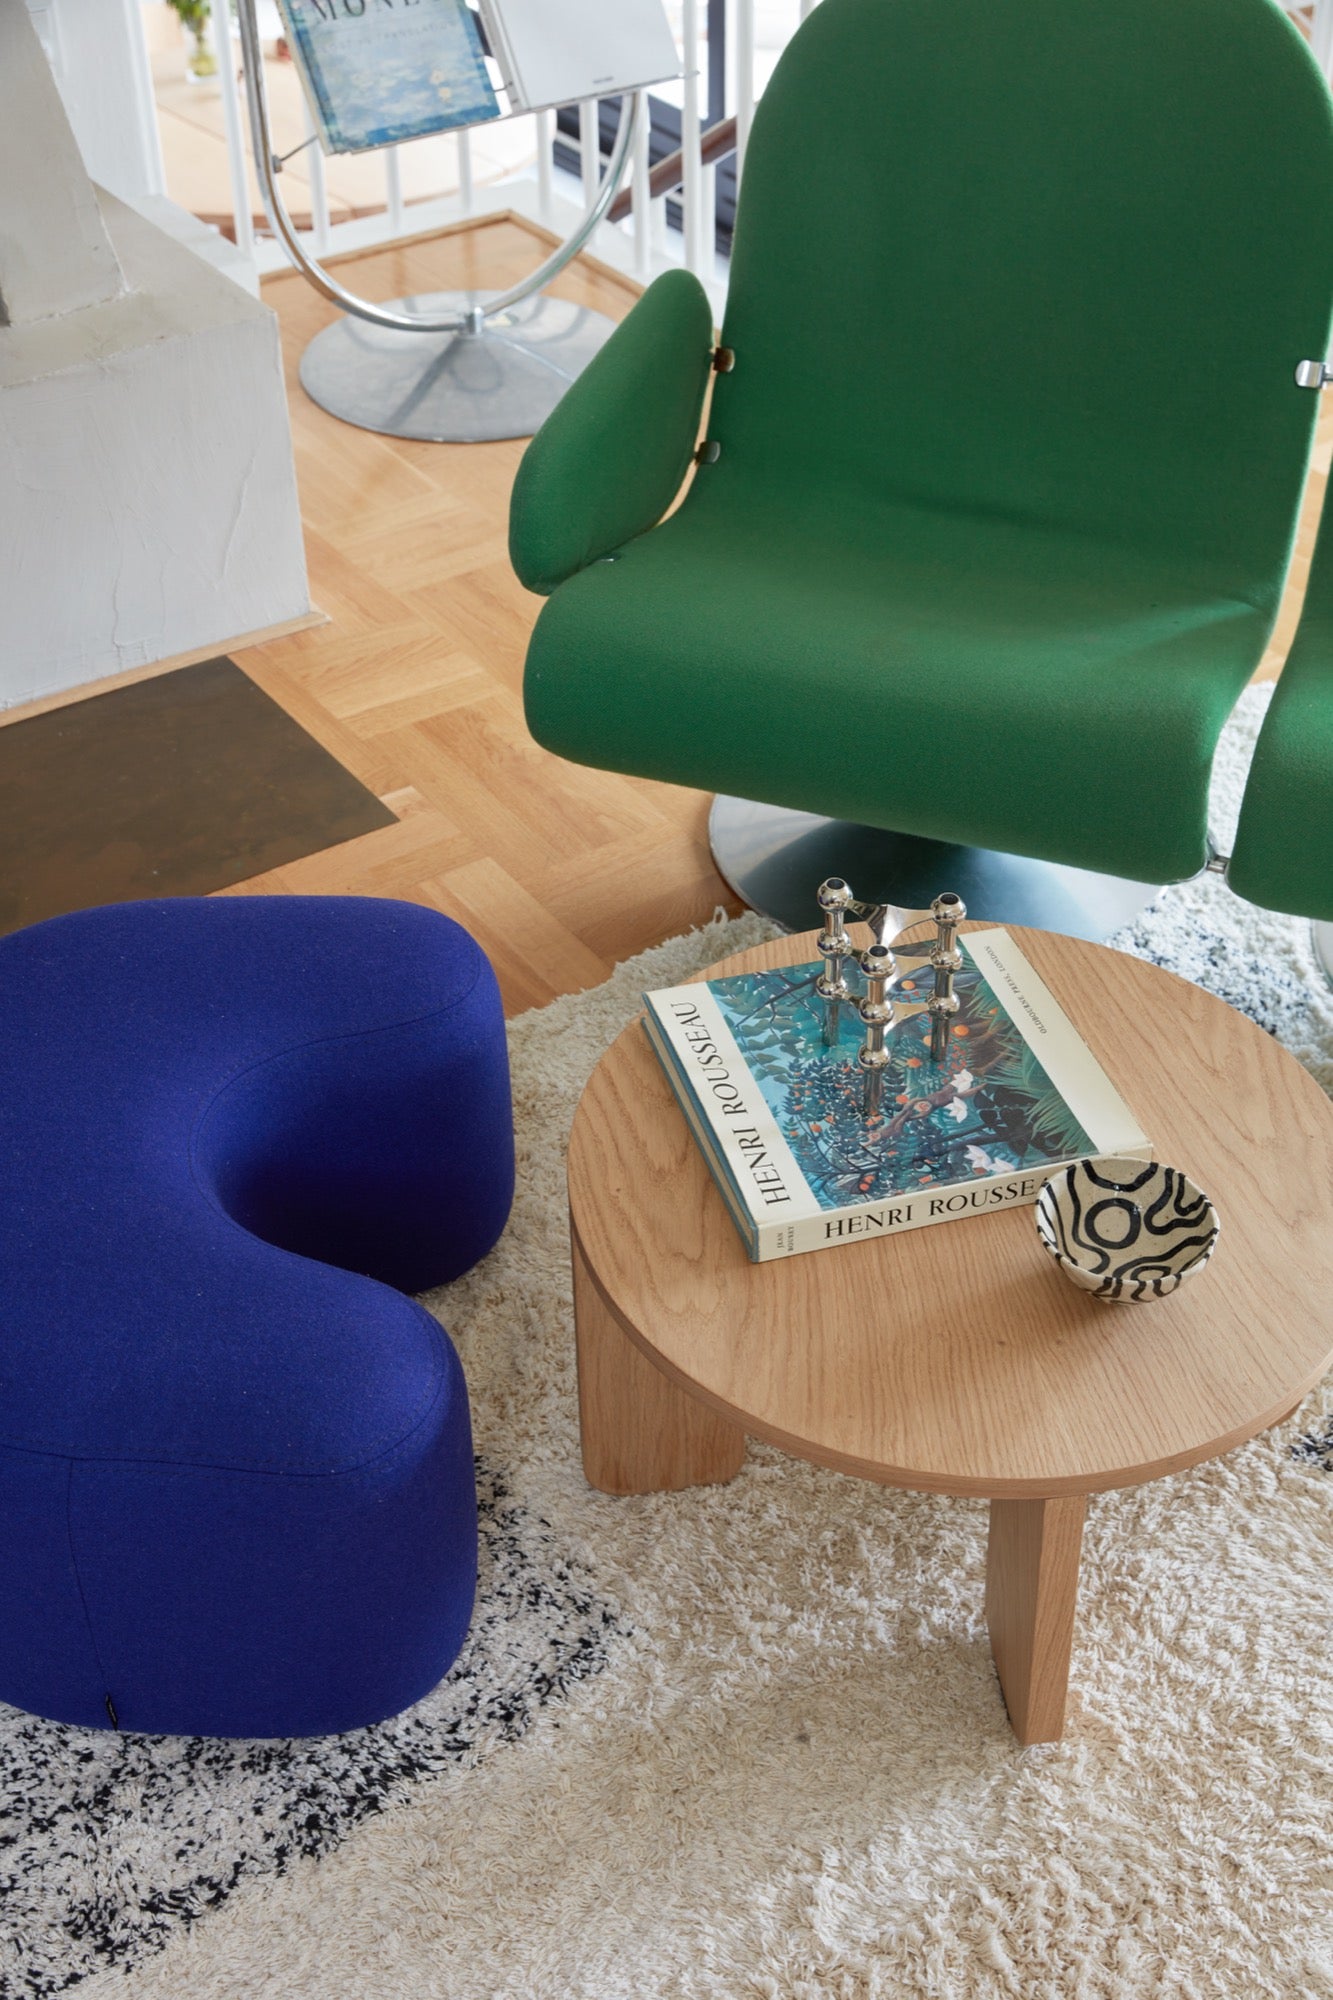 Machen Sie es sich bequem und entdecken Sie Wohnideen für kleine, gemütliche und ästhetische Räume. Entdecken Sie moderne Designs wie Couchtische, poufs, Hocker, Beistelltische, sofas, Sessel, Ottomane, TV-Ständer, sideboards und mehr. Bunt, japandi oder minimalistisch.